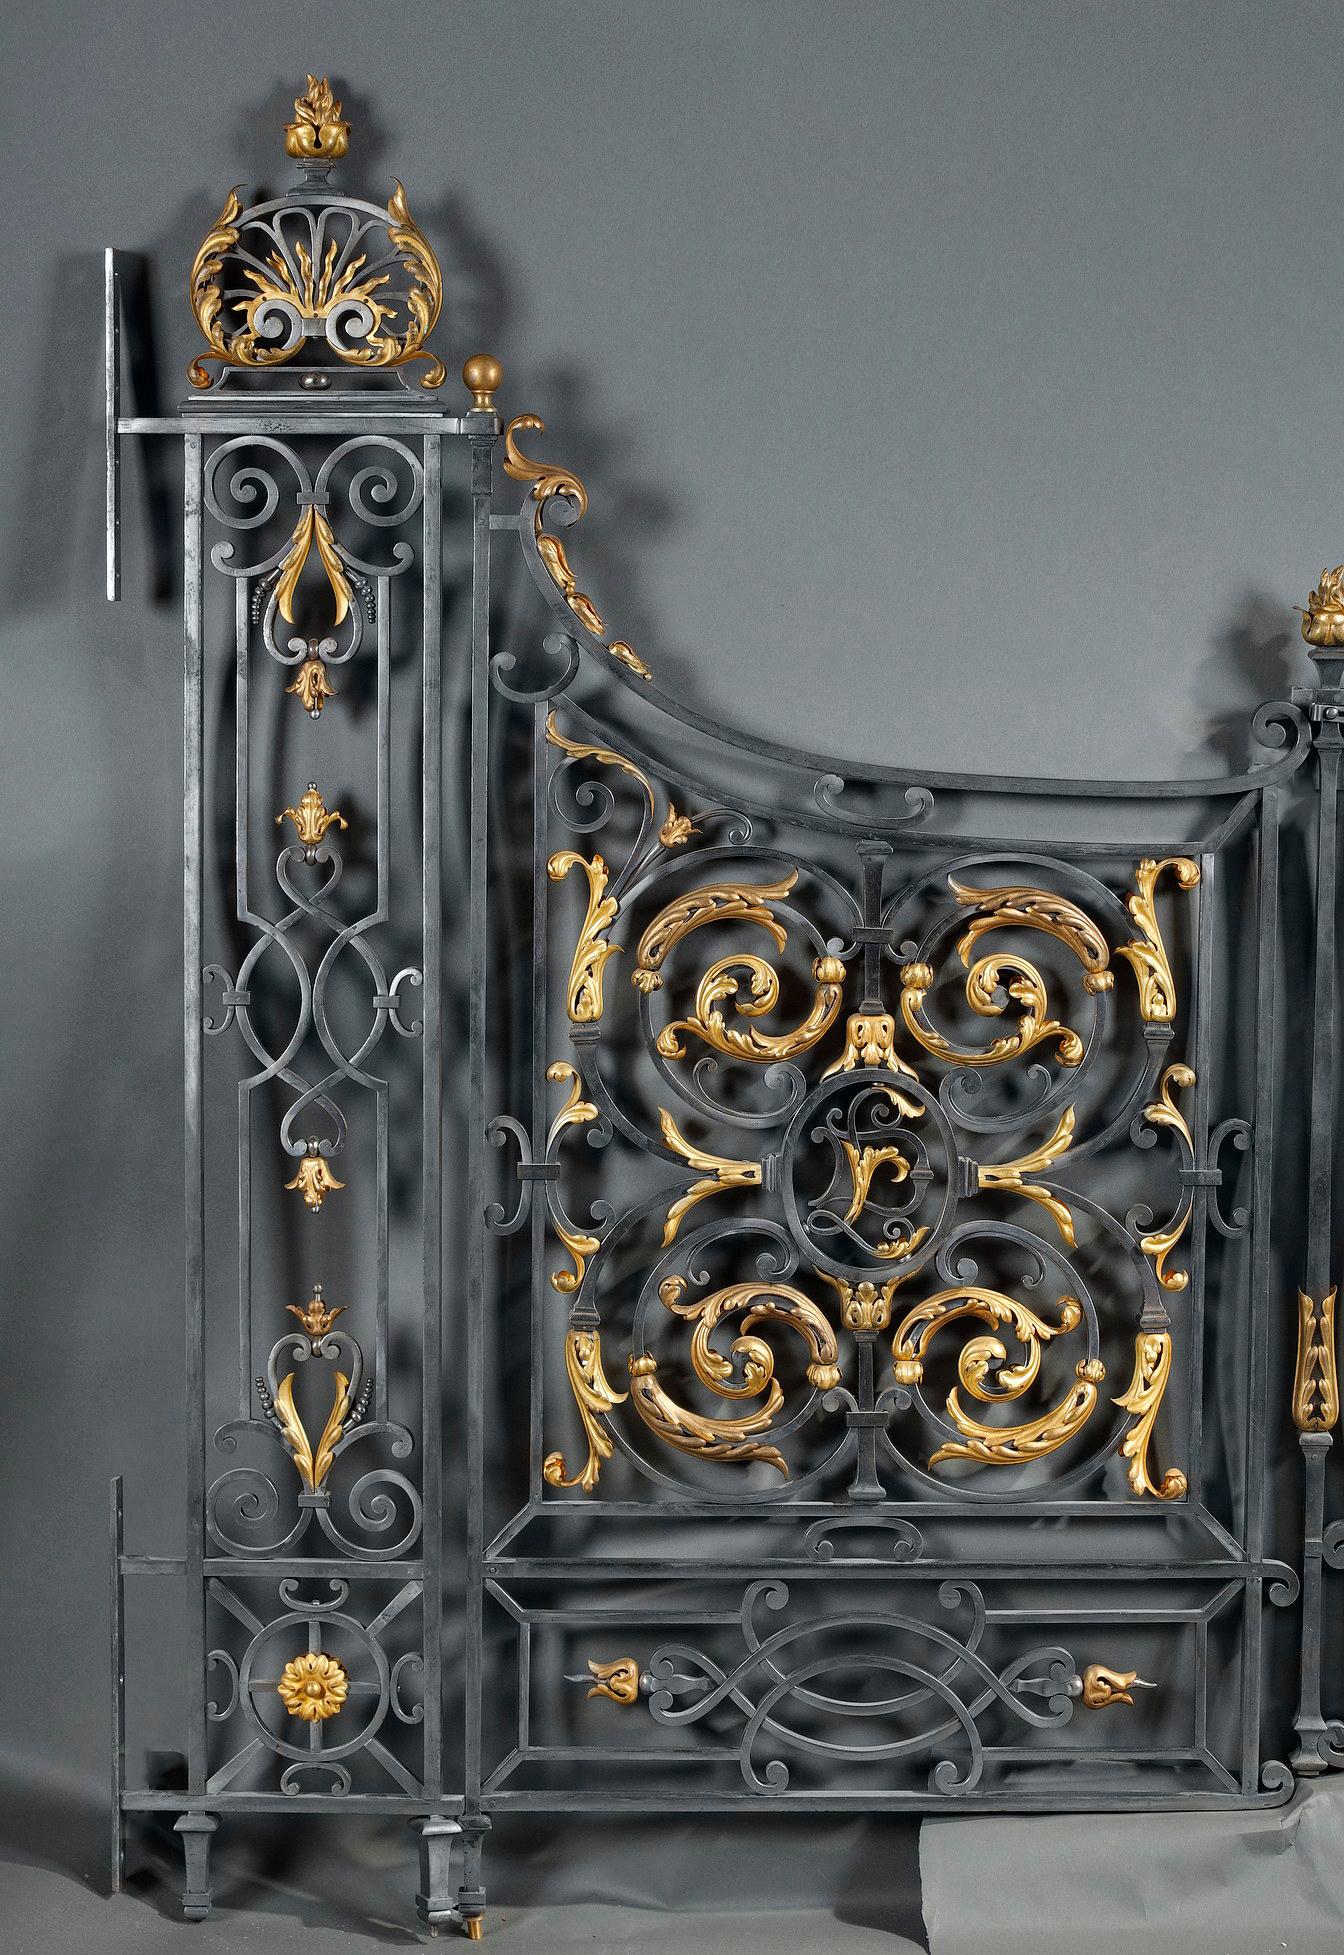 Réalisée en fer forgé, porte intérieure composée de deux battants et de deux portes, avec un élégant décor fait de volutes, enrichi d'ornements en bronze doré.
Les portes sont probablement réalisées d'après un projet de Gabriel Davioud (1823-1881)